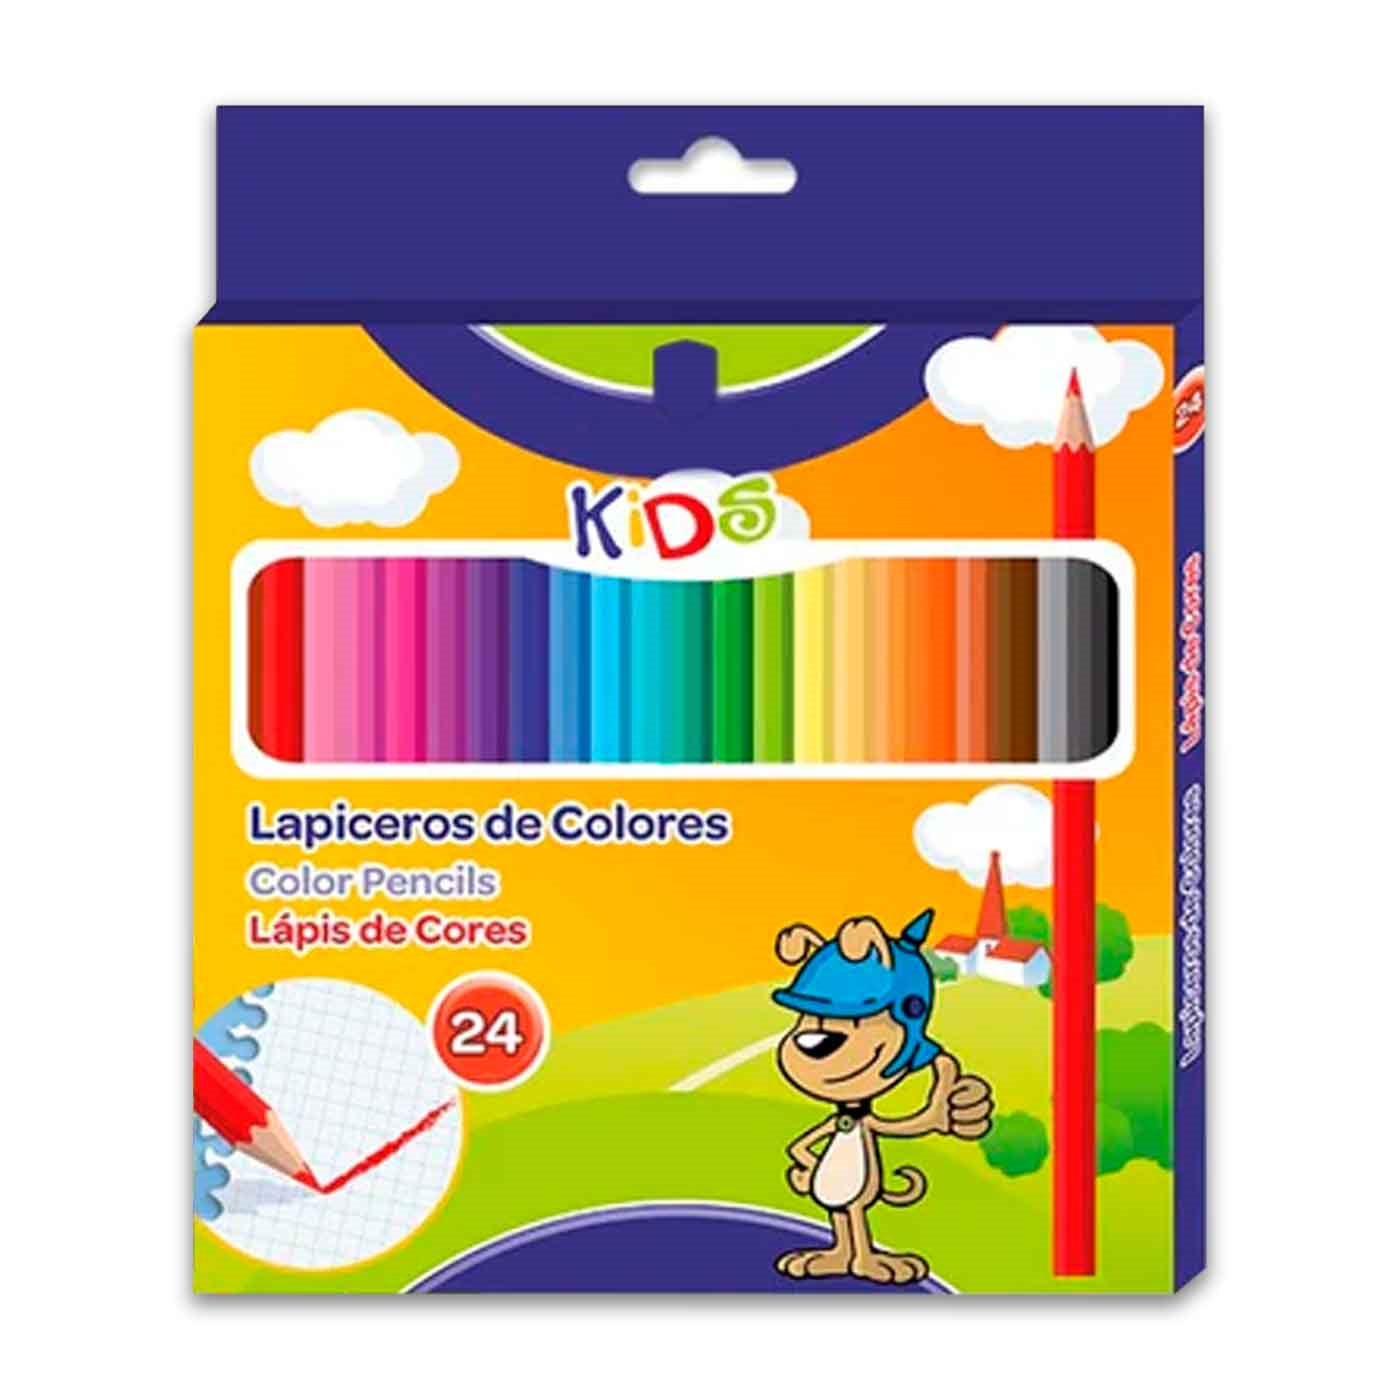 Acan Tradineur - Caja de lápices de colores - 24 Colores llamativos -  Fabricación en madera - Forma hexagonal - Ideal para los niños